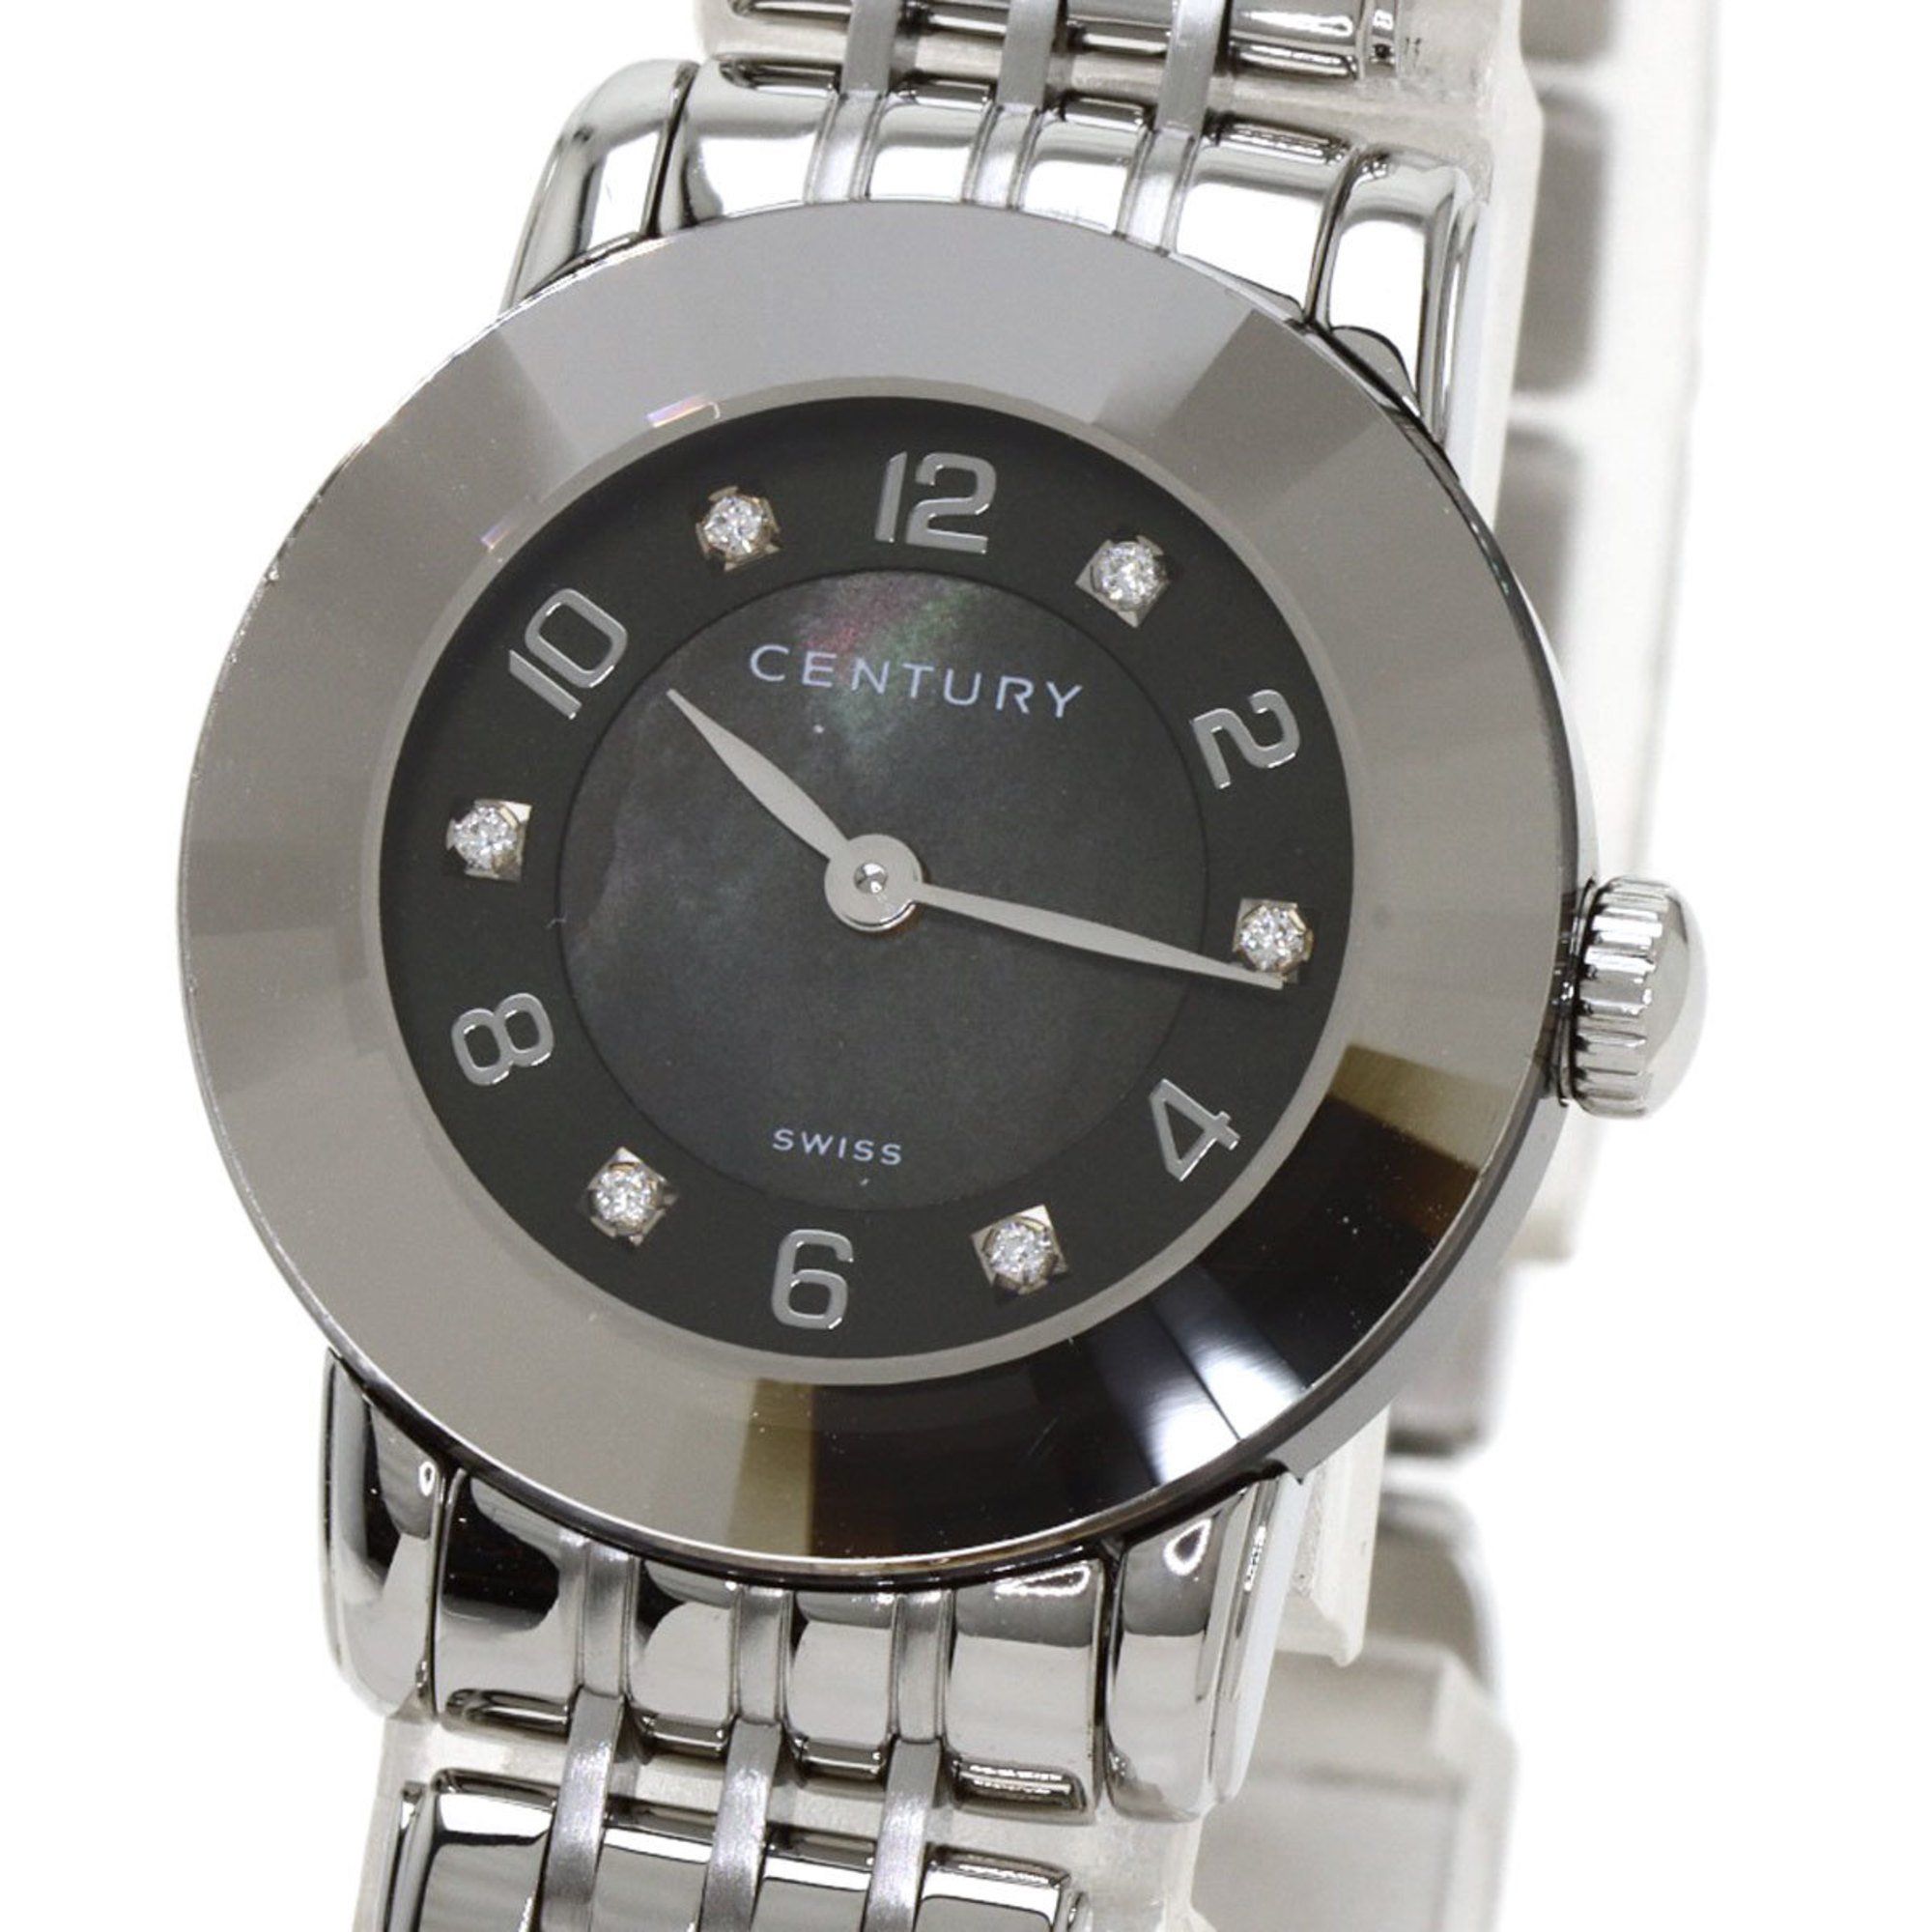 Century 648.7.S.N5B.12.SF elegance watch stainless steel SS ladies CENTURY